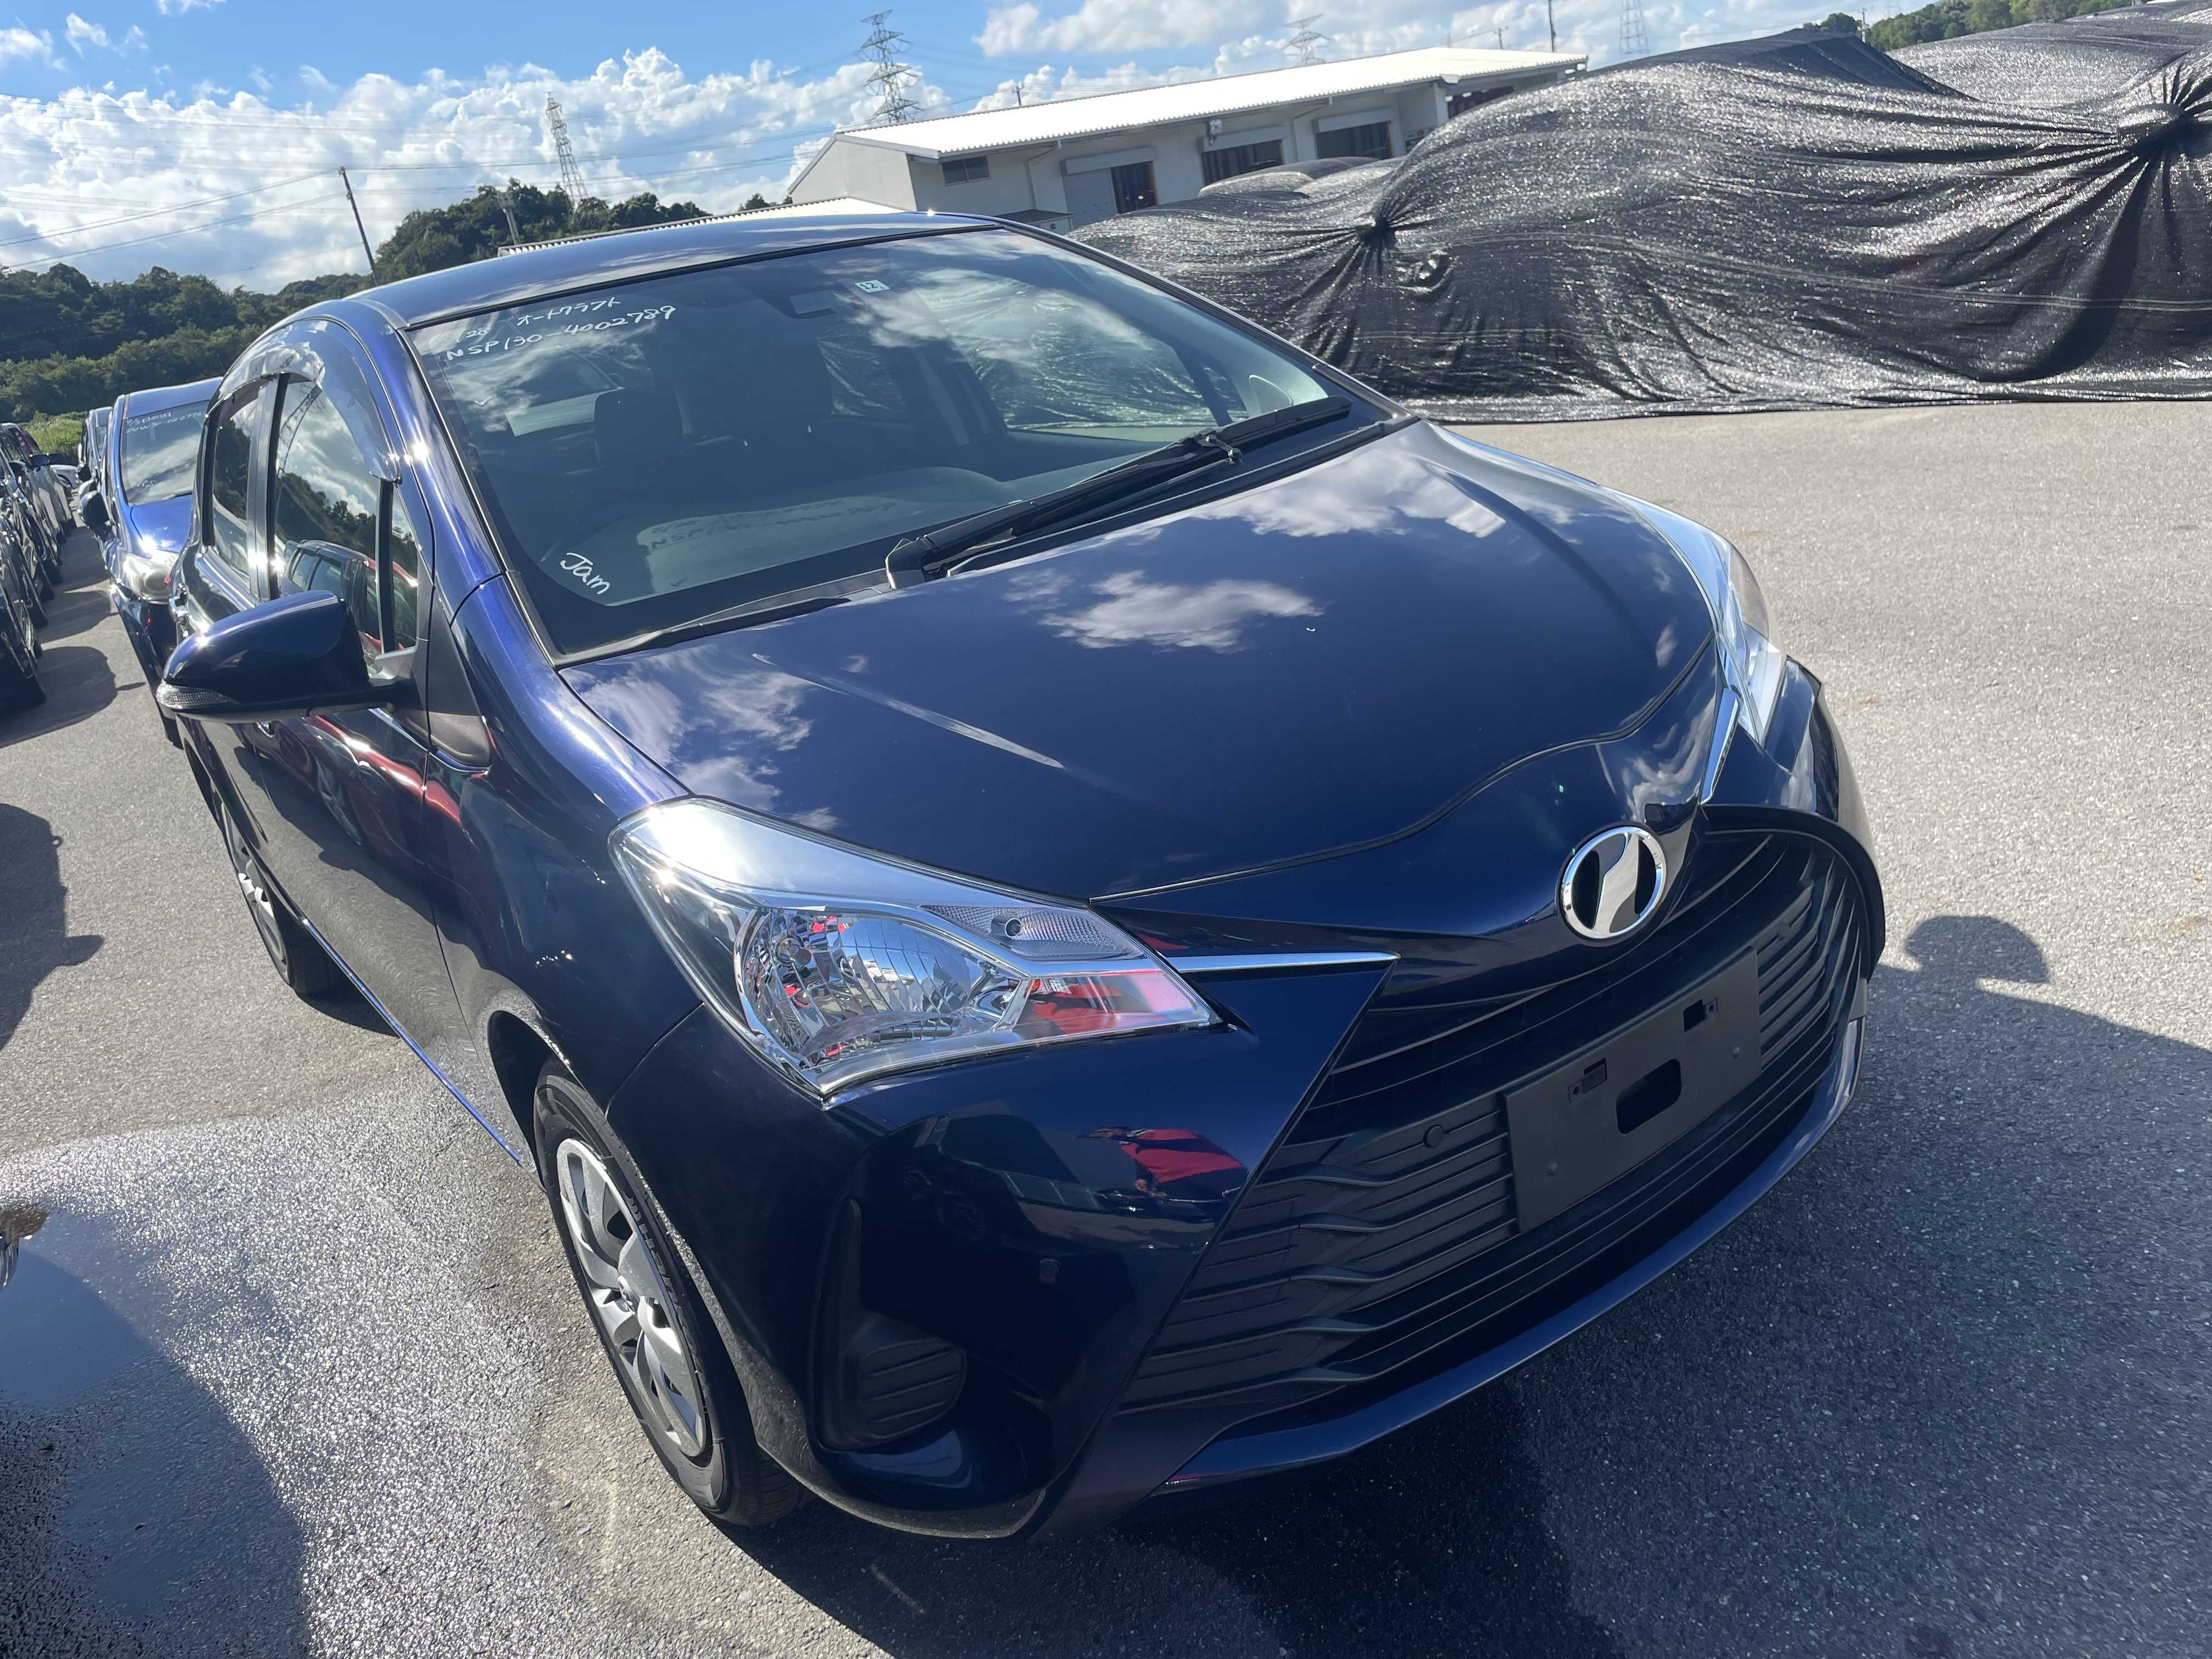 Toyota Vitz 2018